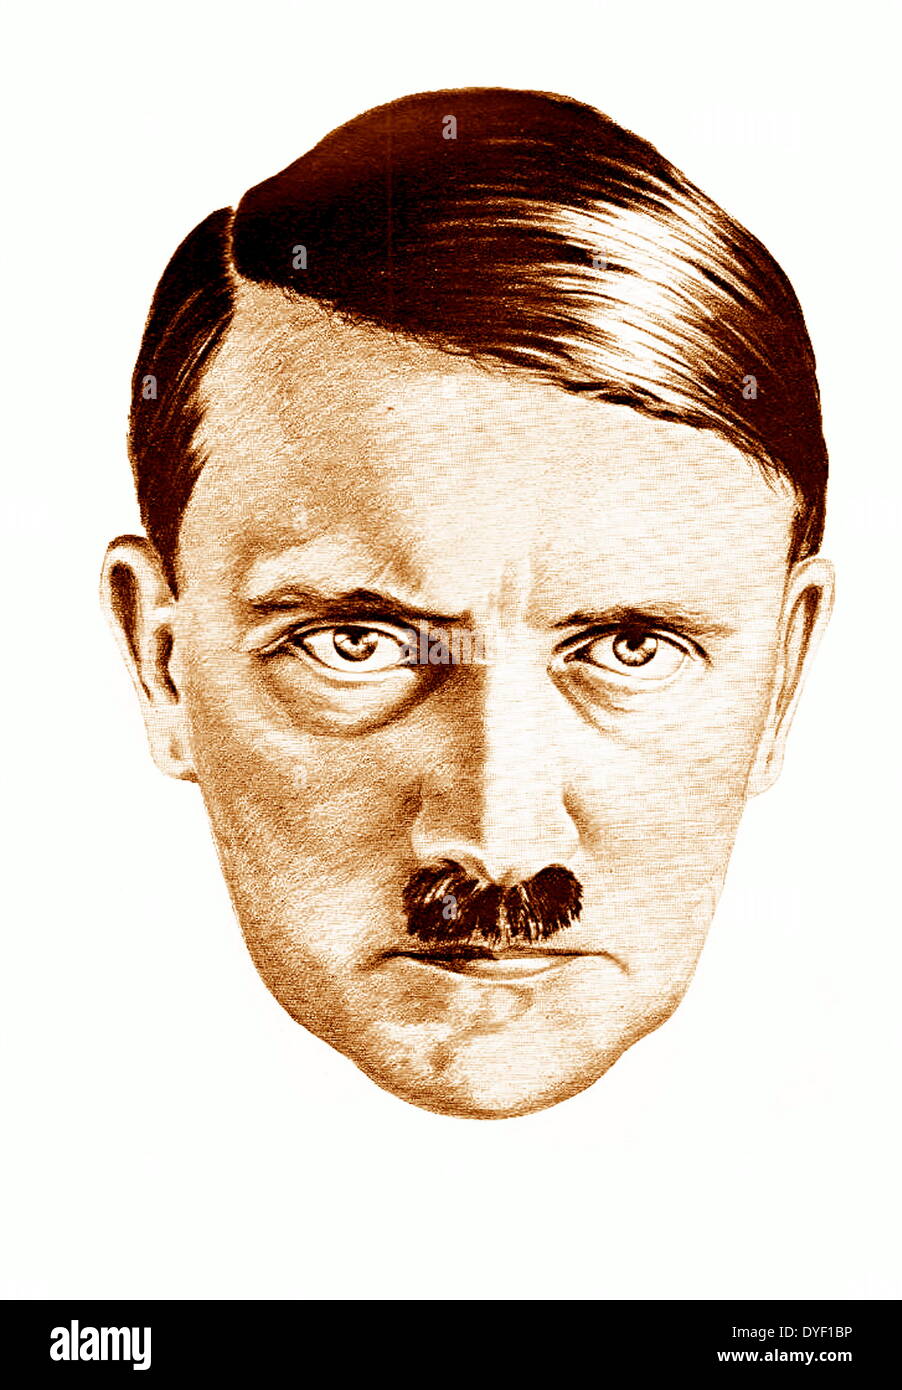 Dibujo de Adolf Hitler, por H. Hoffmann Oloffs basada en una fotografía.  Hitler era el líder del partido nazi durante la II Guerra Mundial  Fotografía de stock - Alamy